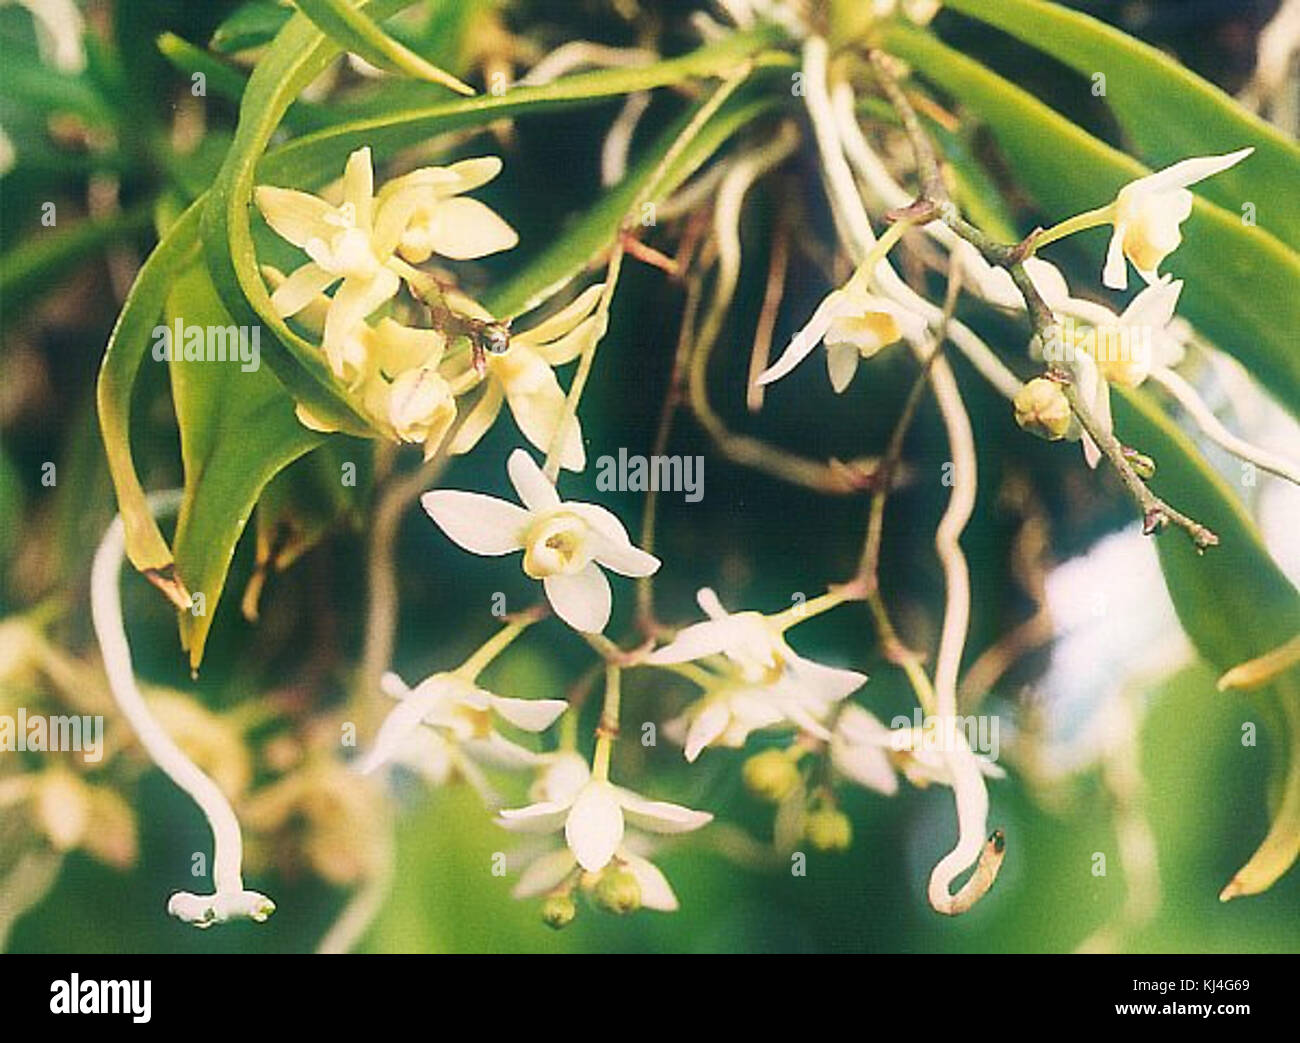 Thrixspermum saruwatarii 01 Stock Photo